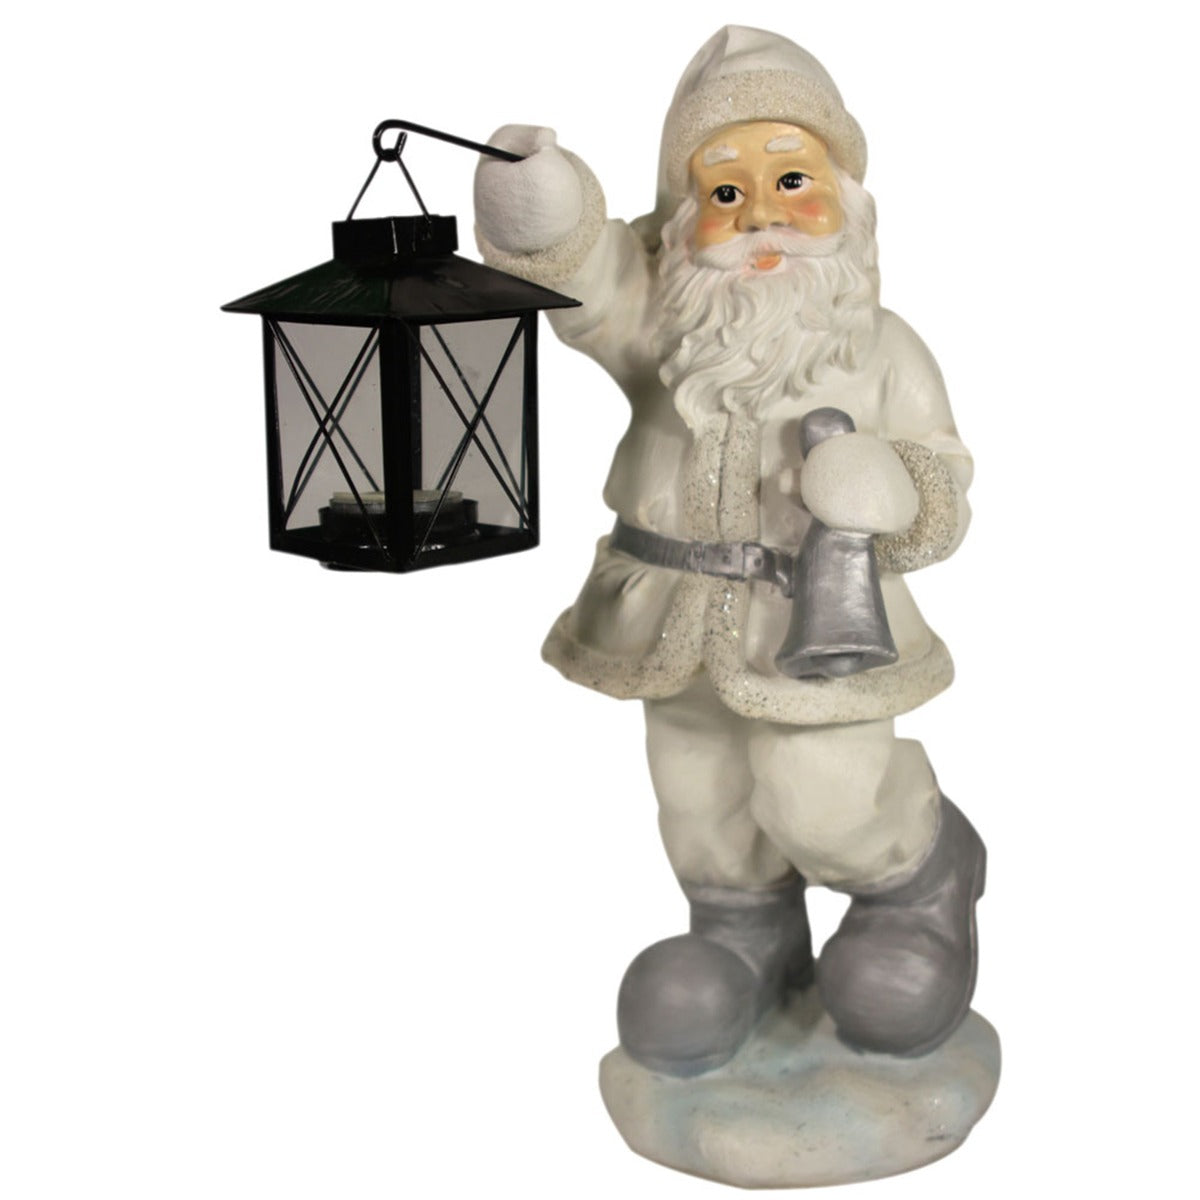 Weihnachtsmann Figur mit Teelichthalterung weiß silber Weihnachts Dekoration